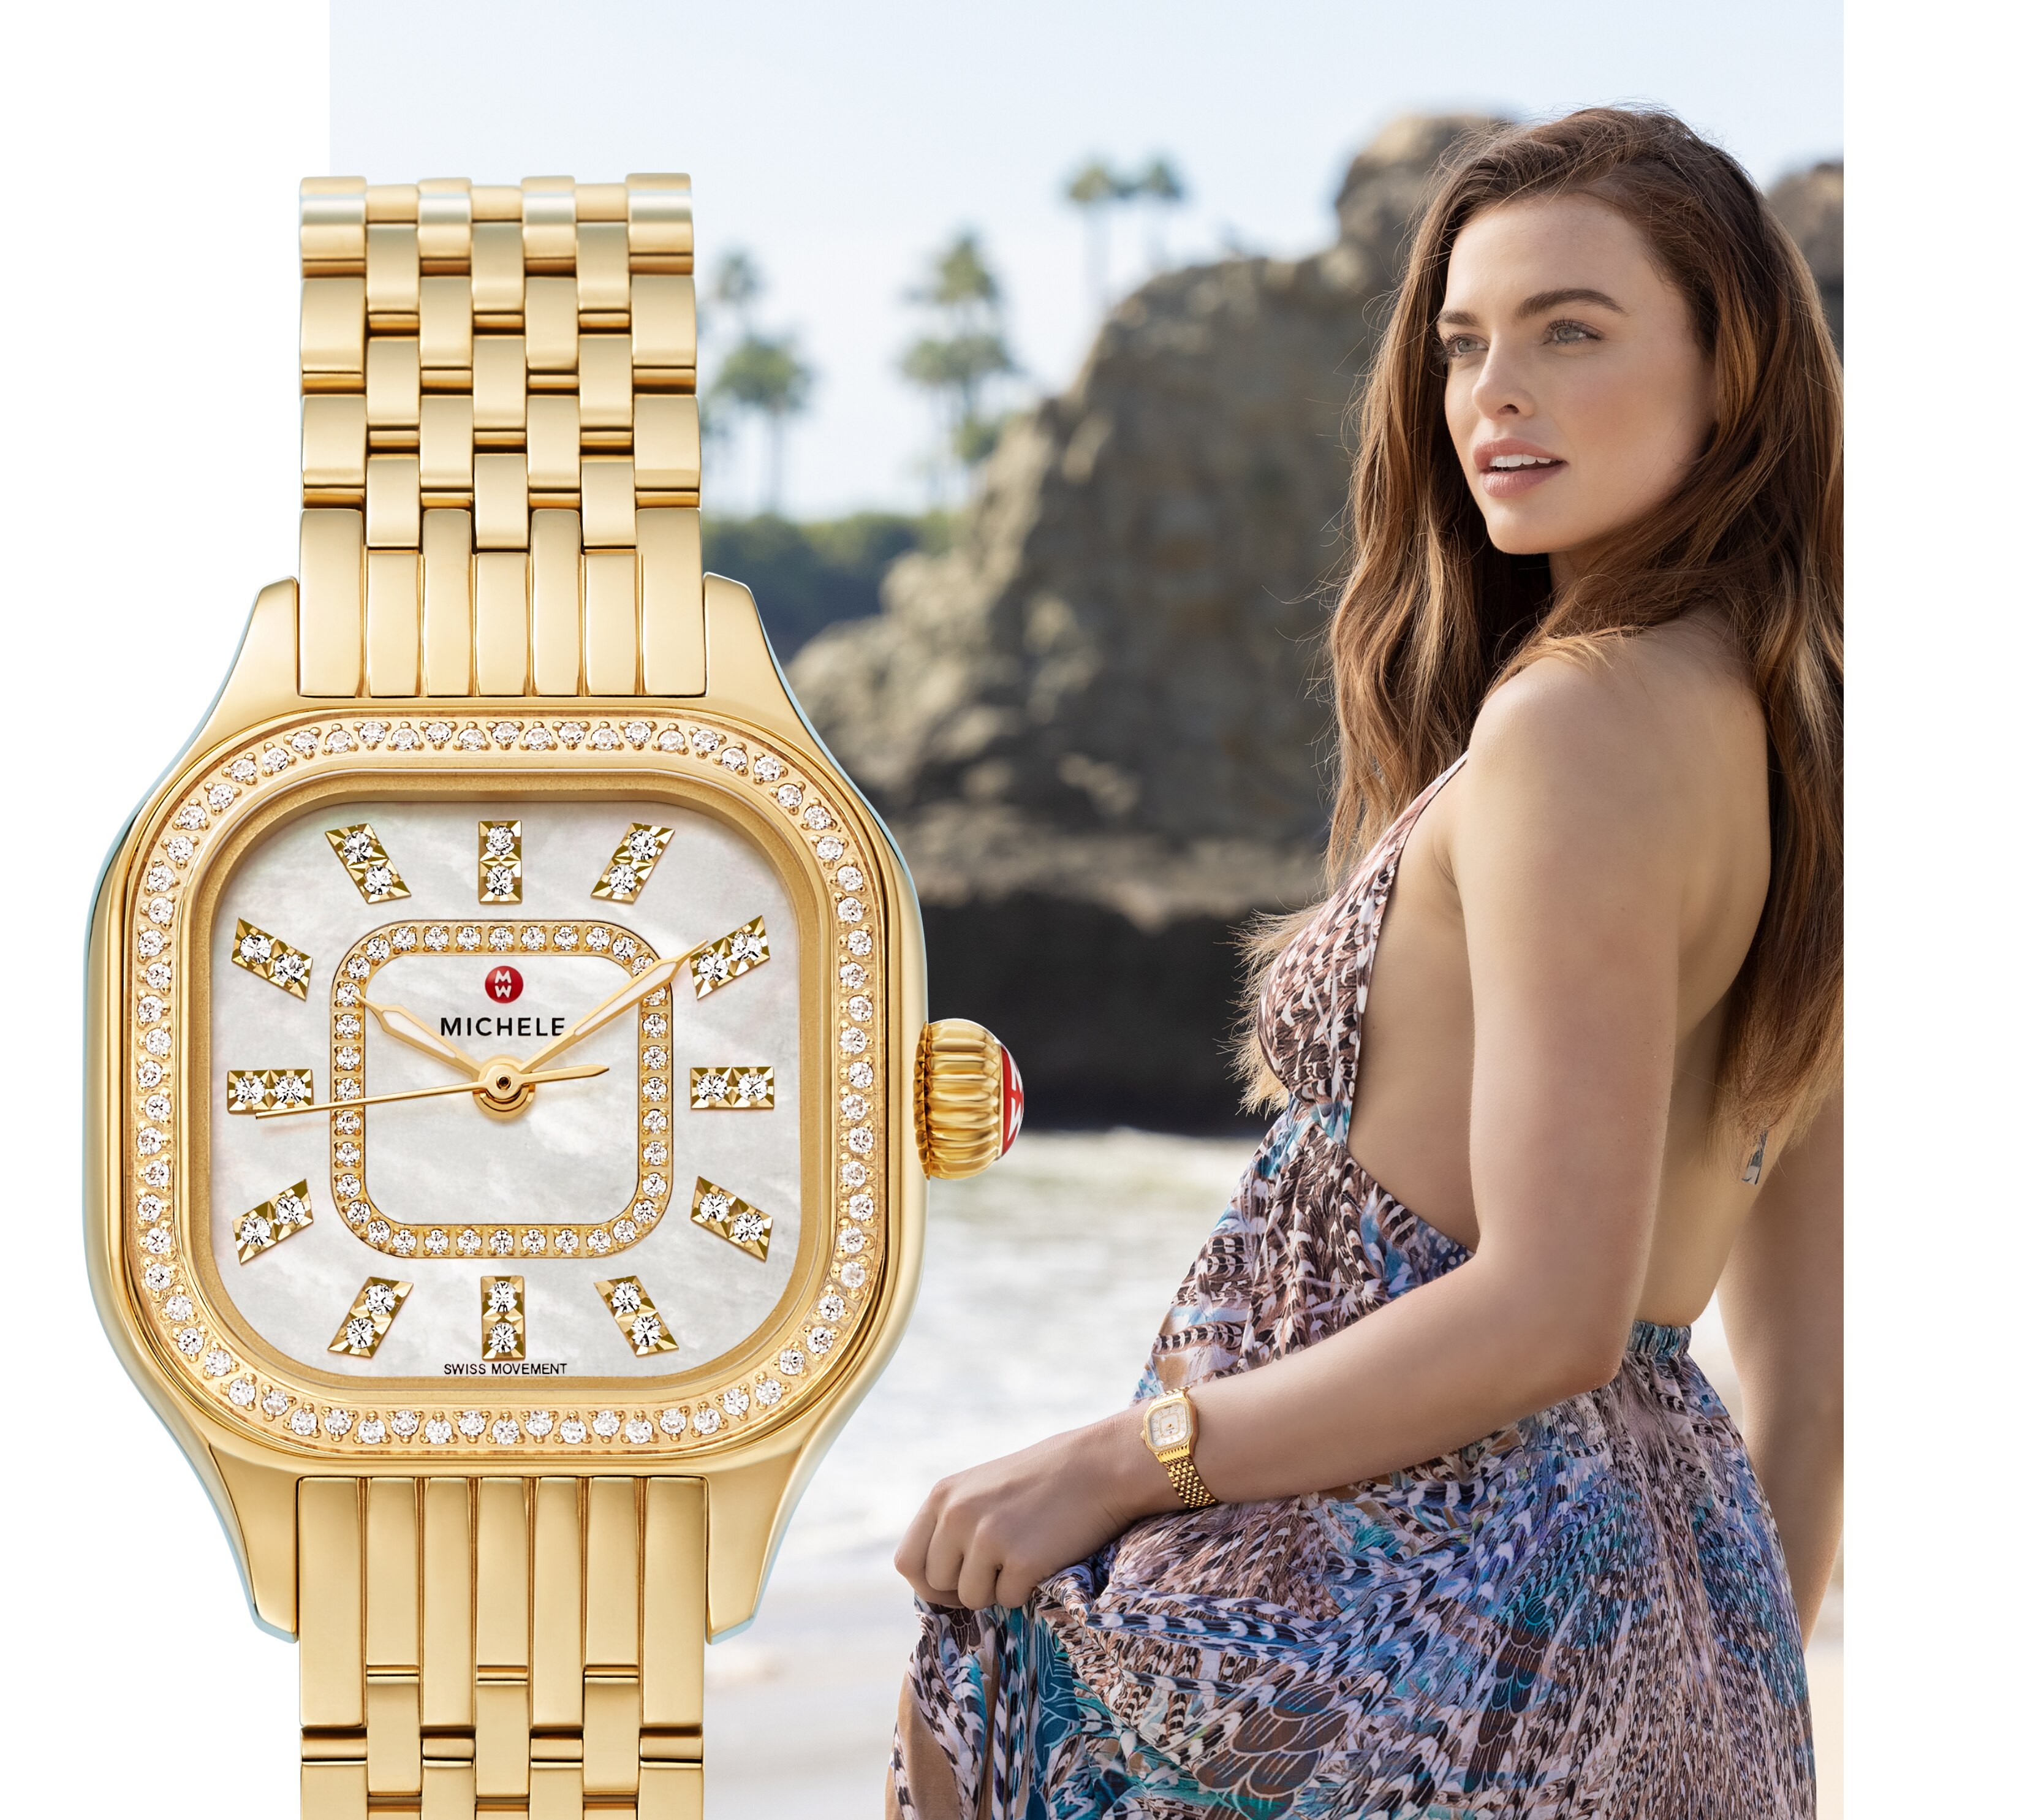 Stylish woman on beach wearing Meggie watch in 18k gold.